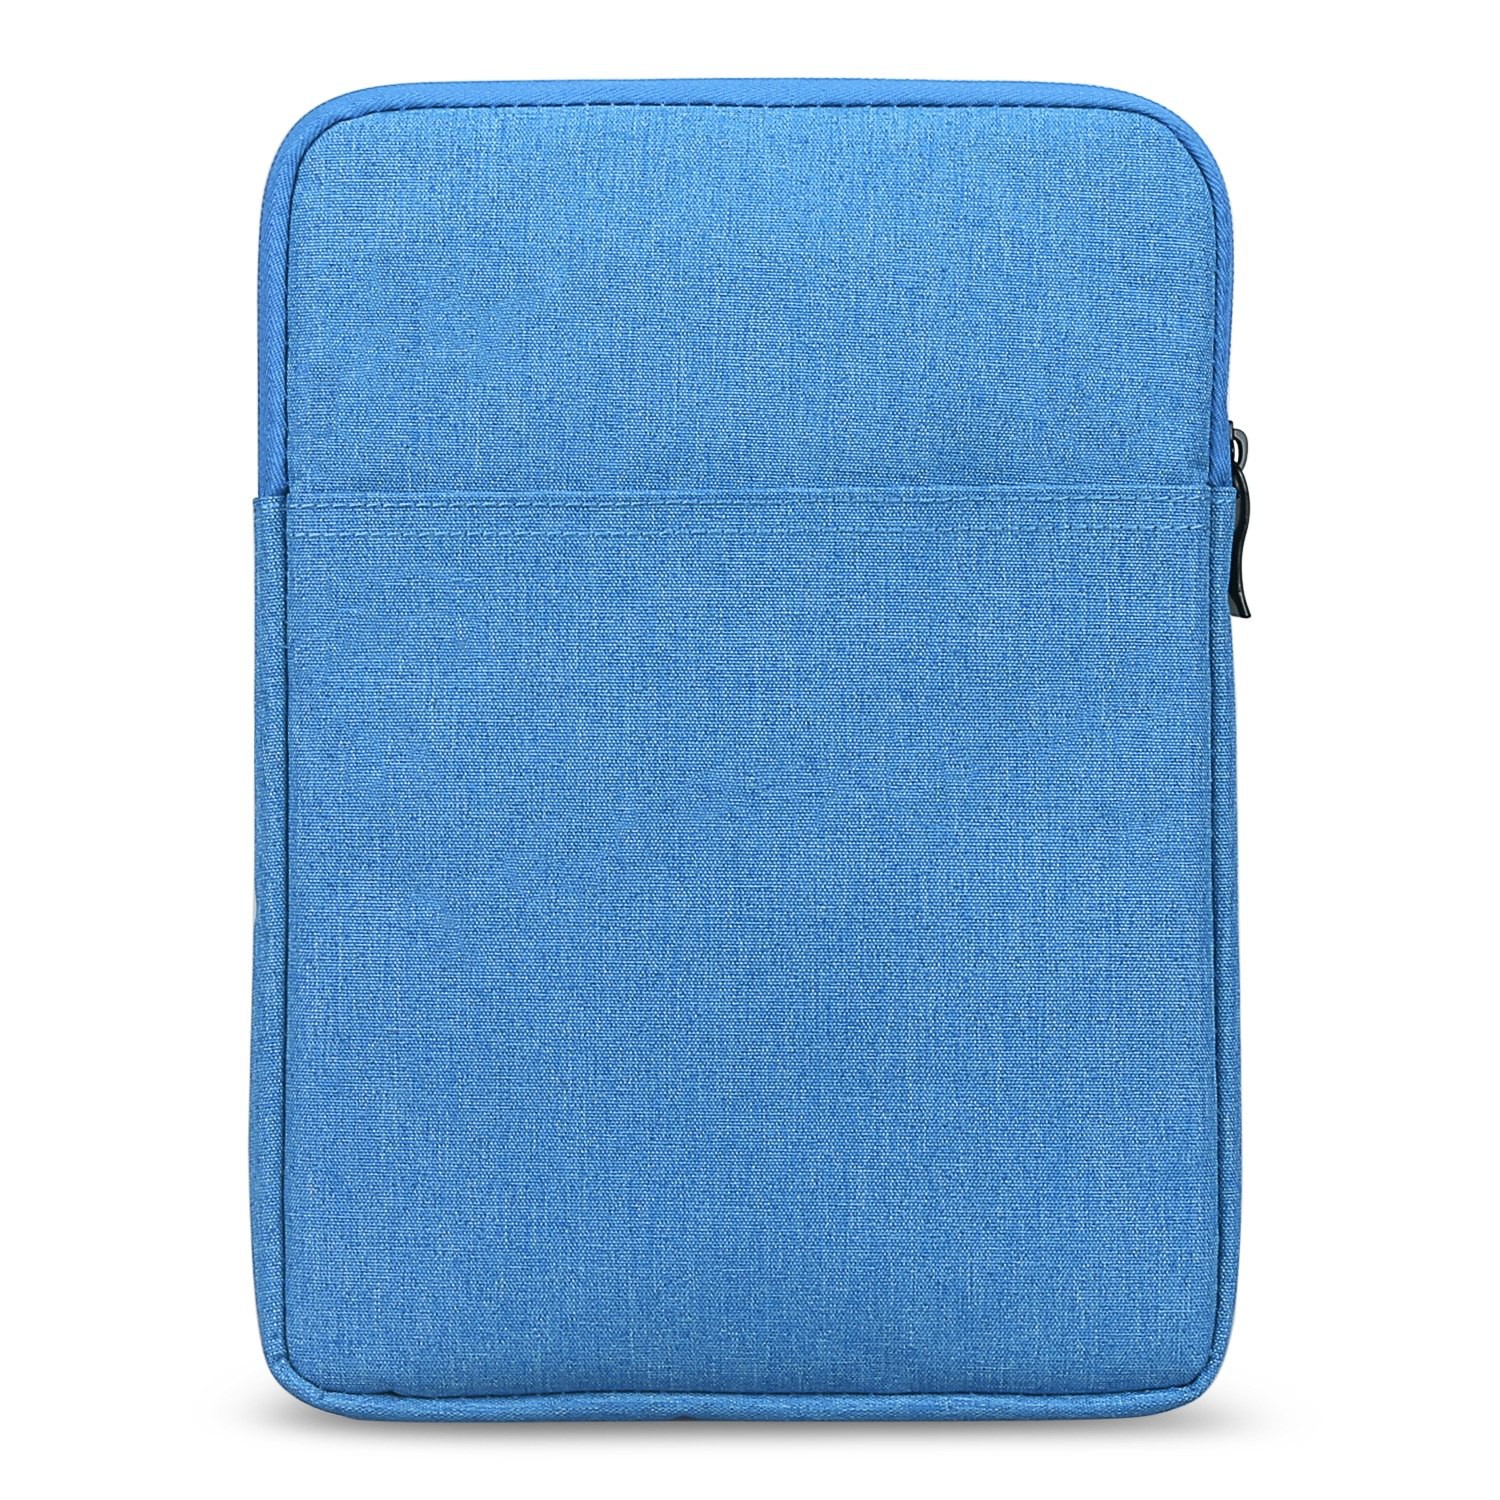 salaris herberg snelweg S02 DrPhone 7 inch E-Reader Soft Sleeve Beschermhoes - Pouchbag - Blauw